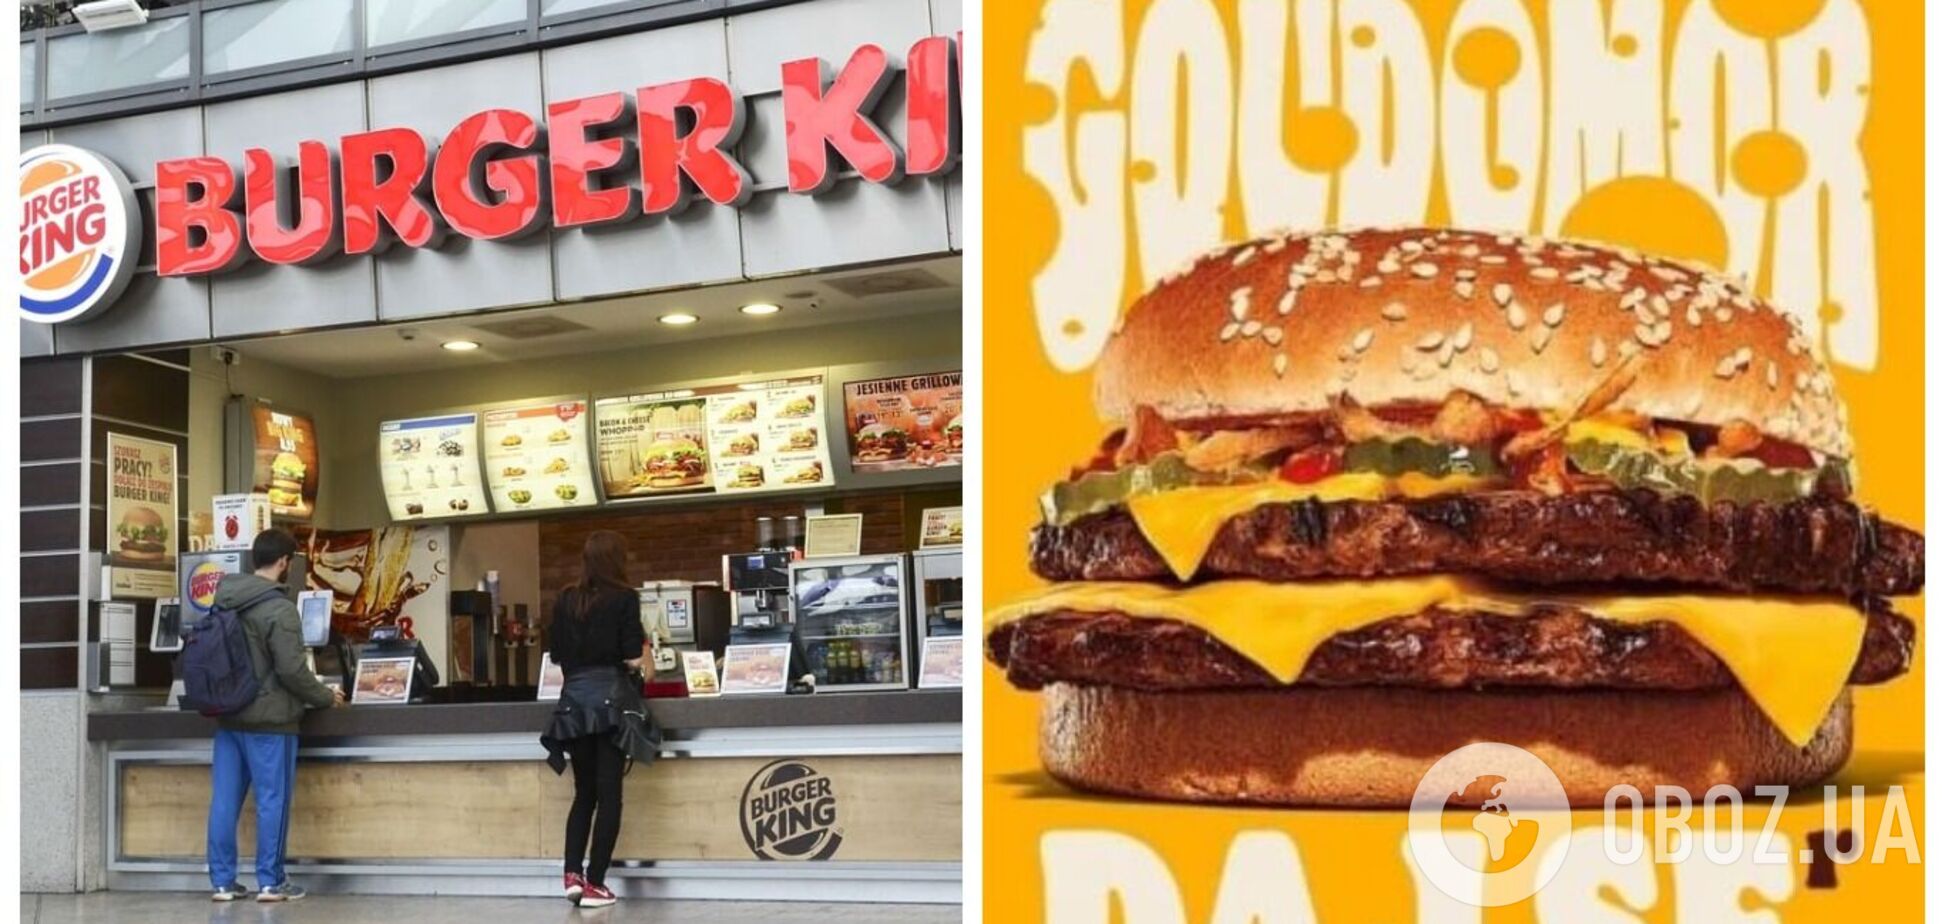 Польський Burger King випустив бургер Goudomor та потрапив у скандал: українці обурені. Фото